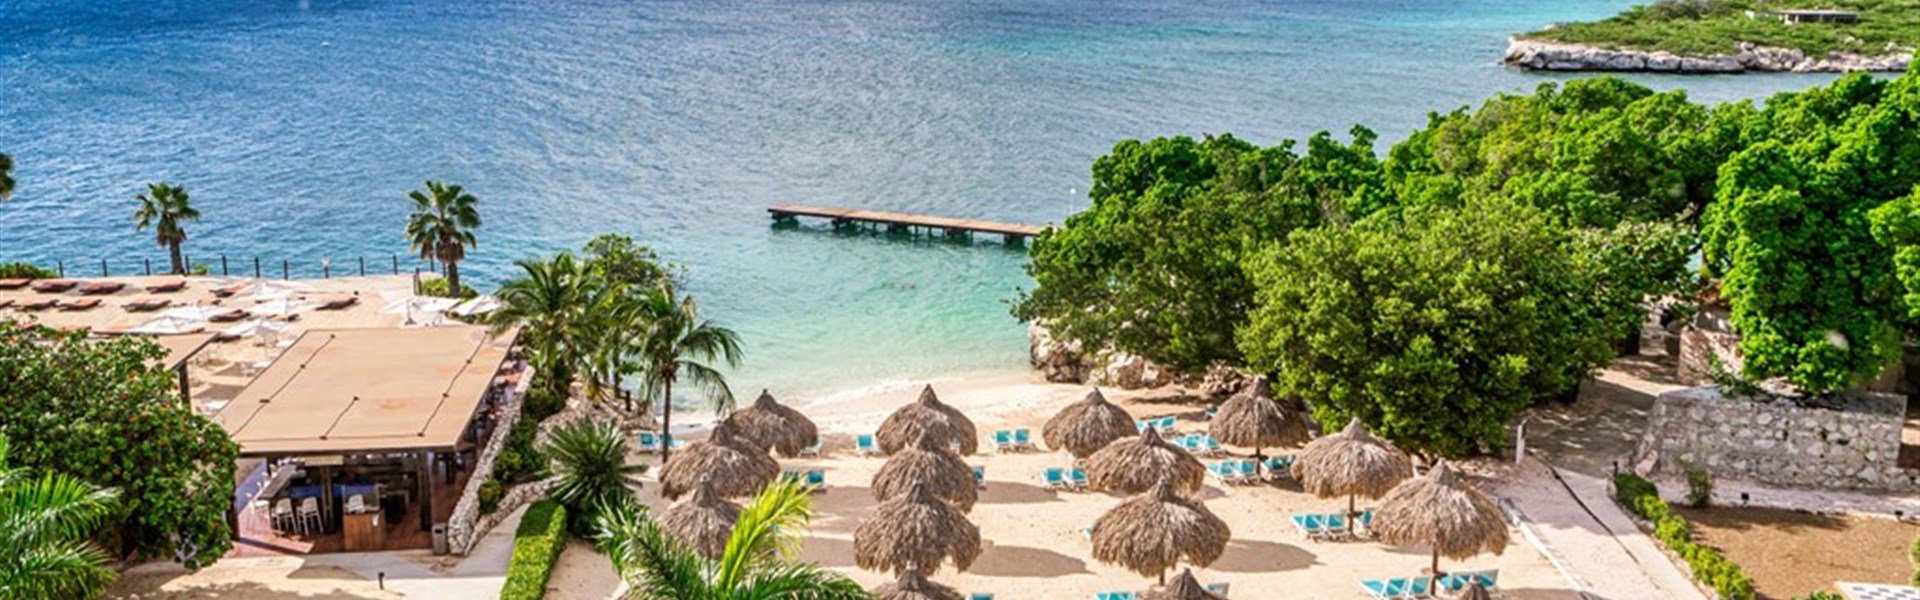 Dreams Curaçao Resort, Spa & Casino - All Inclusive - 